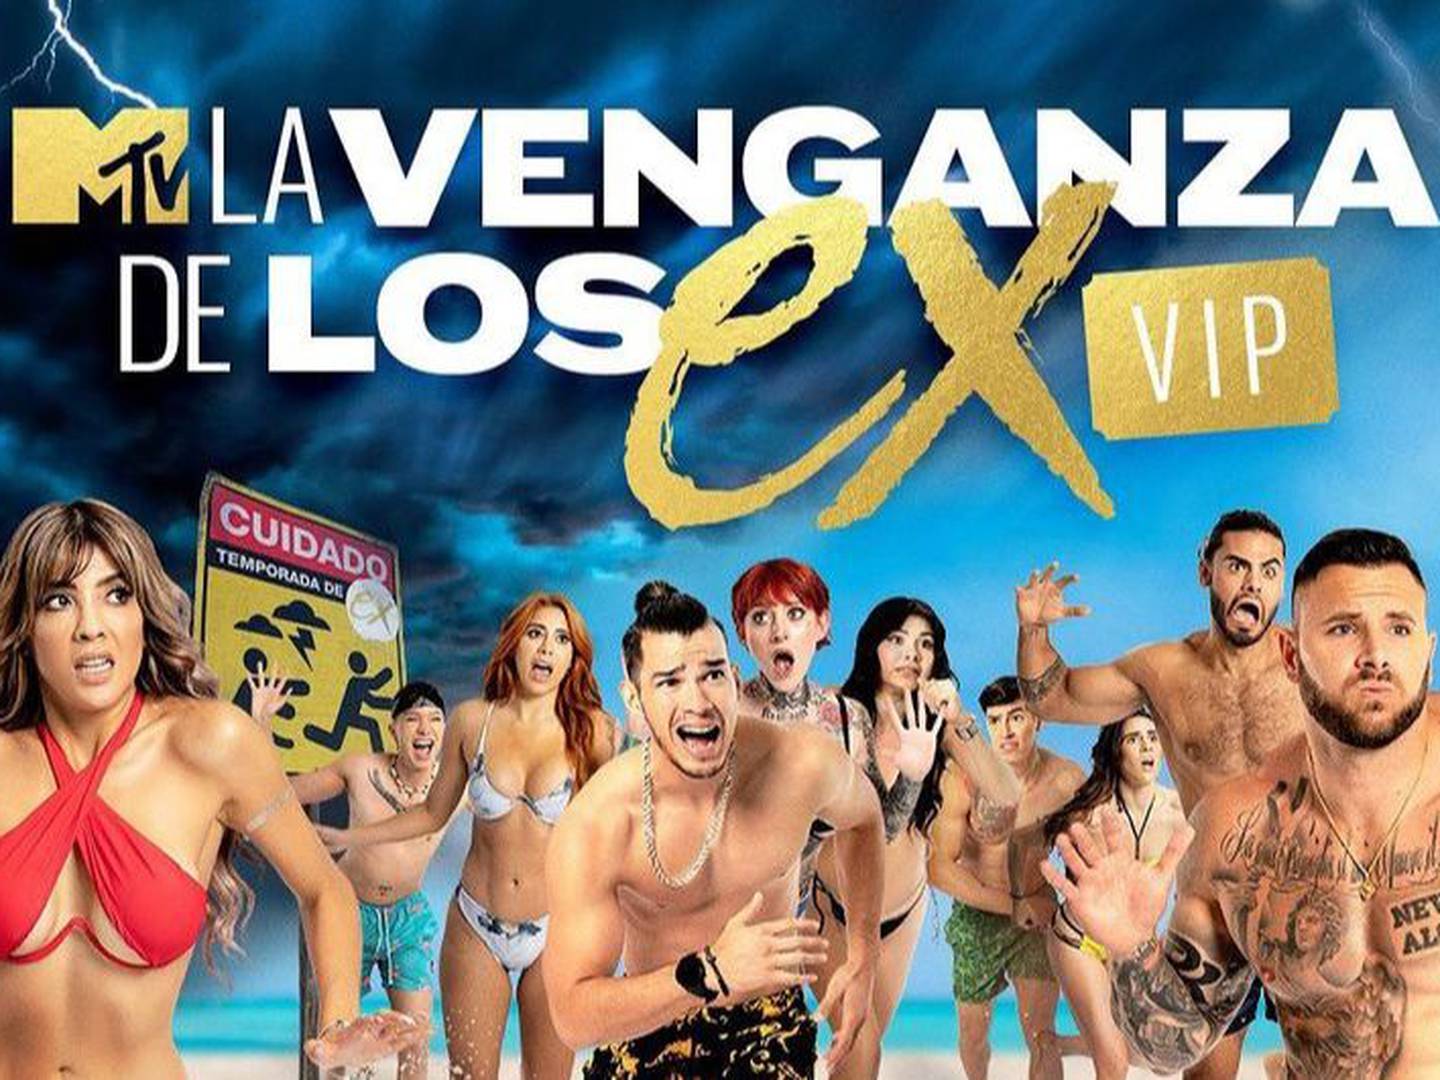 Dónde ver La Venganza de los EX VIP de MTV? | Publimetro México